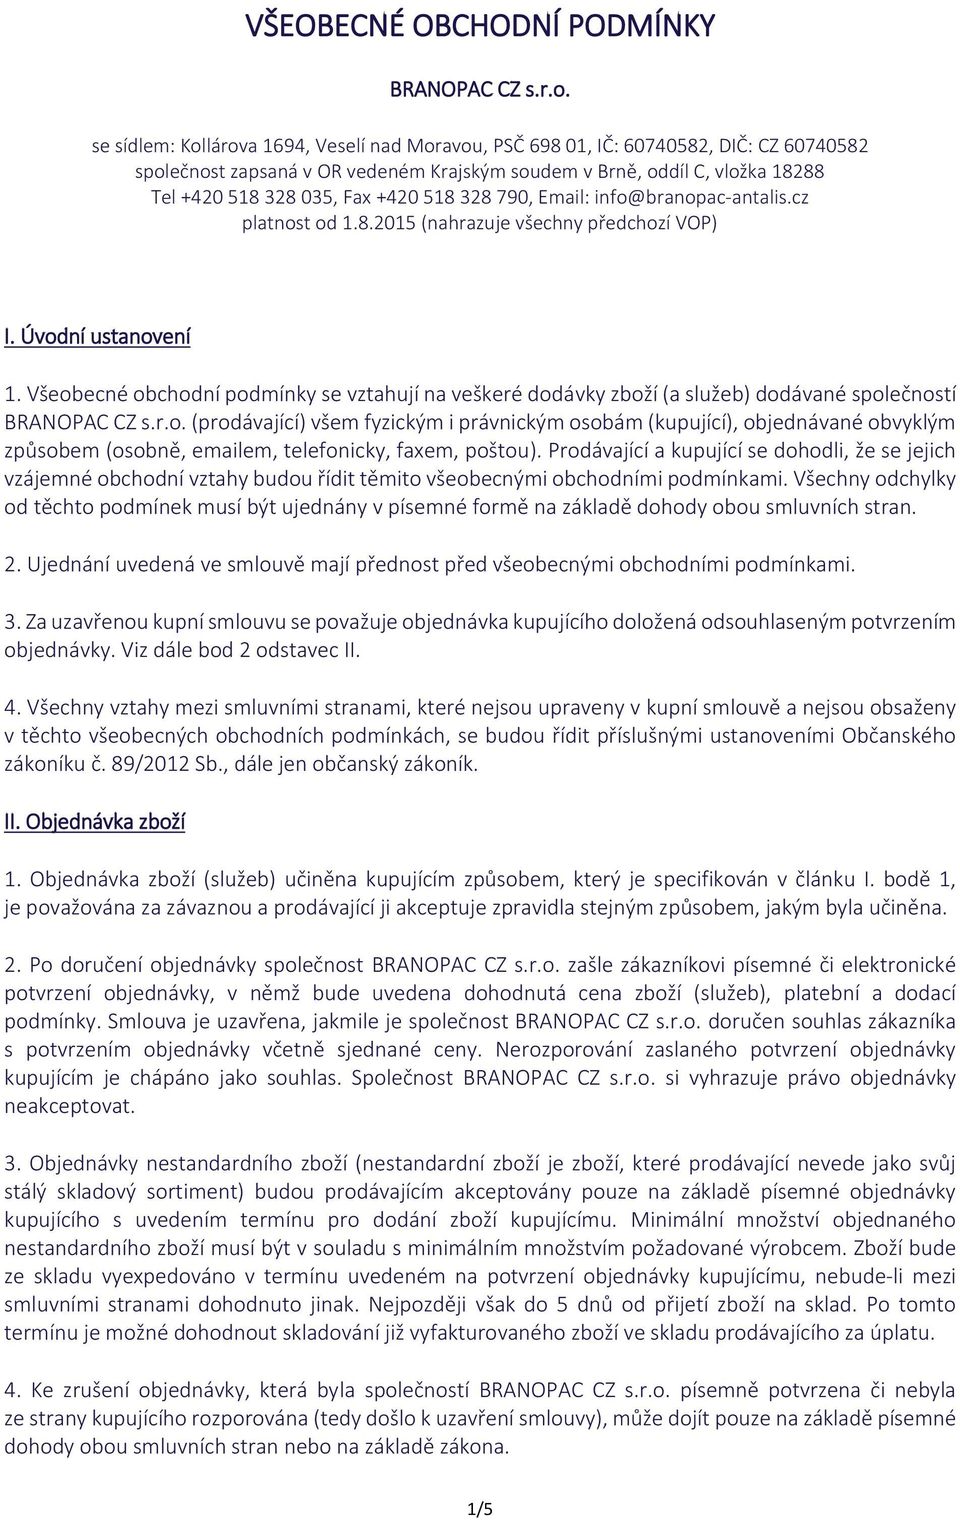 518 328 790, Email: info@branopac-antalis.cz platnost od 1.8.2015 (nahrazuje všechny předchozí VOP) I. Úvodní ustanovení 1.